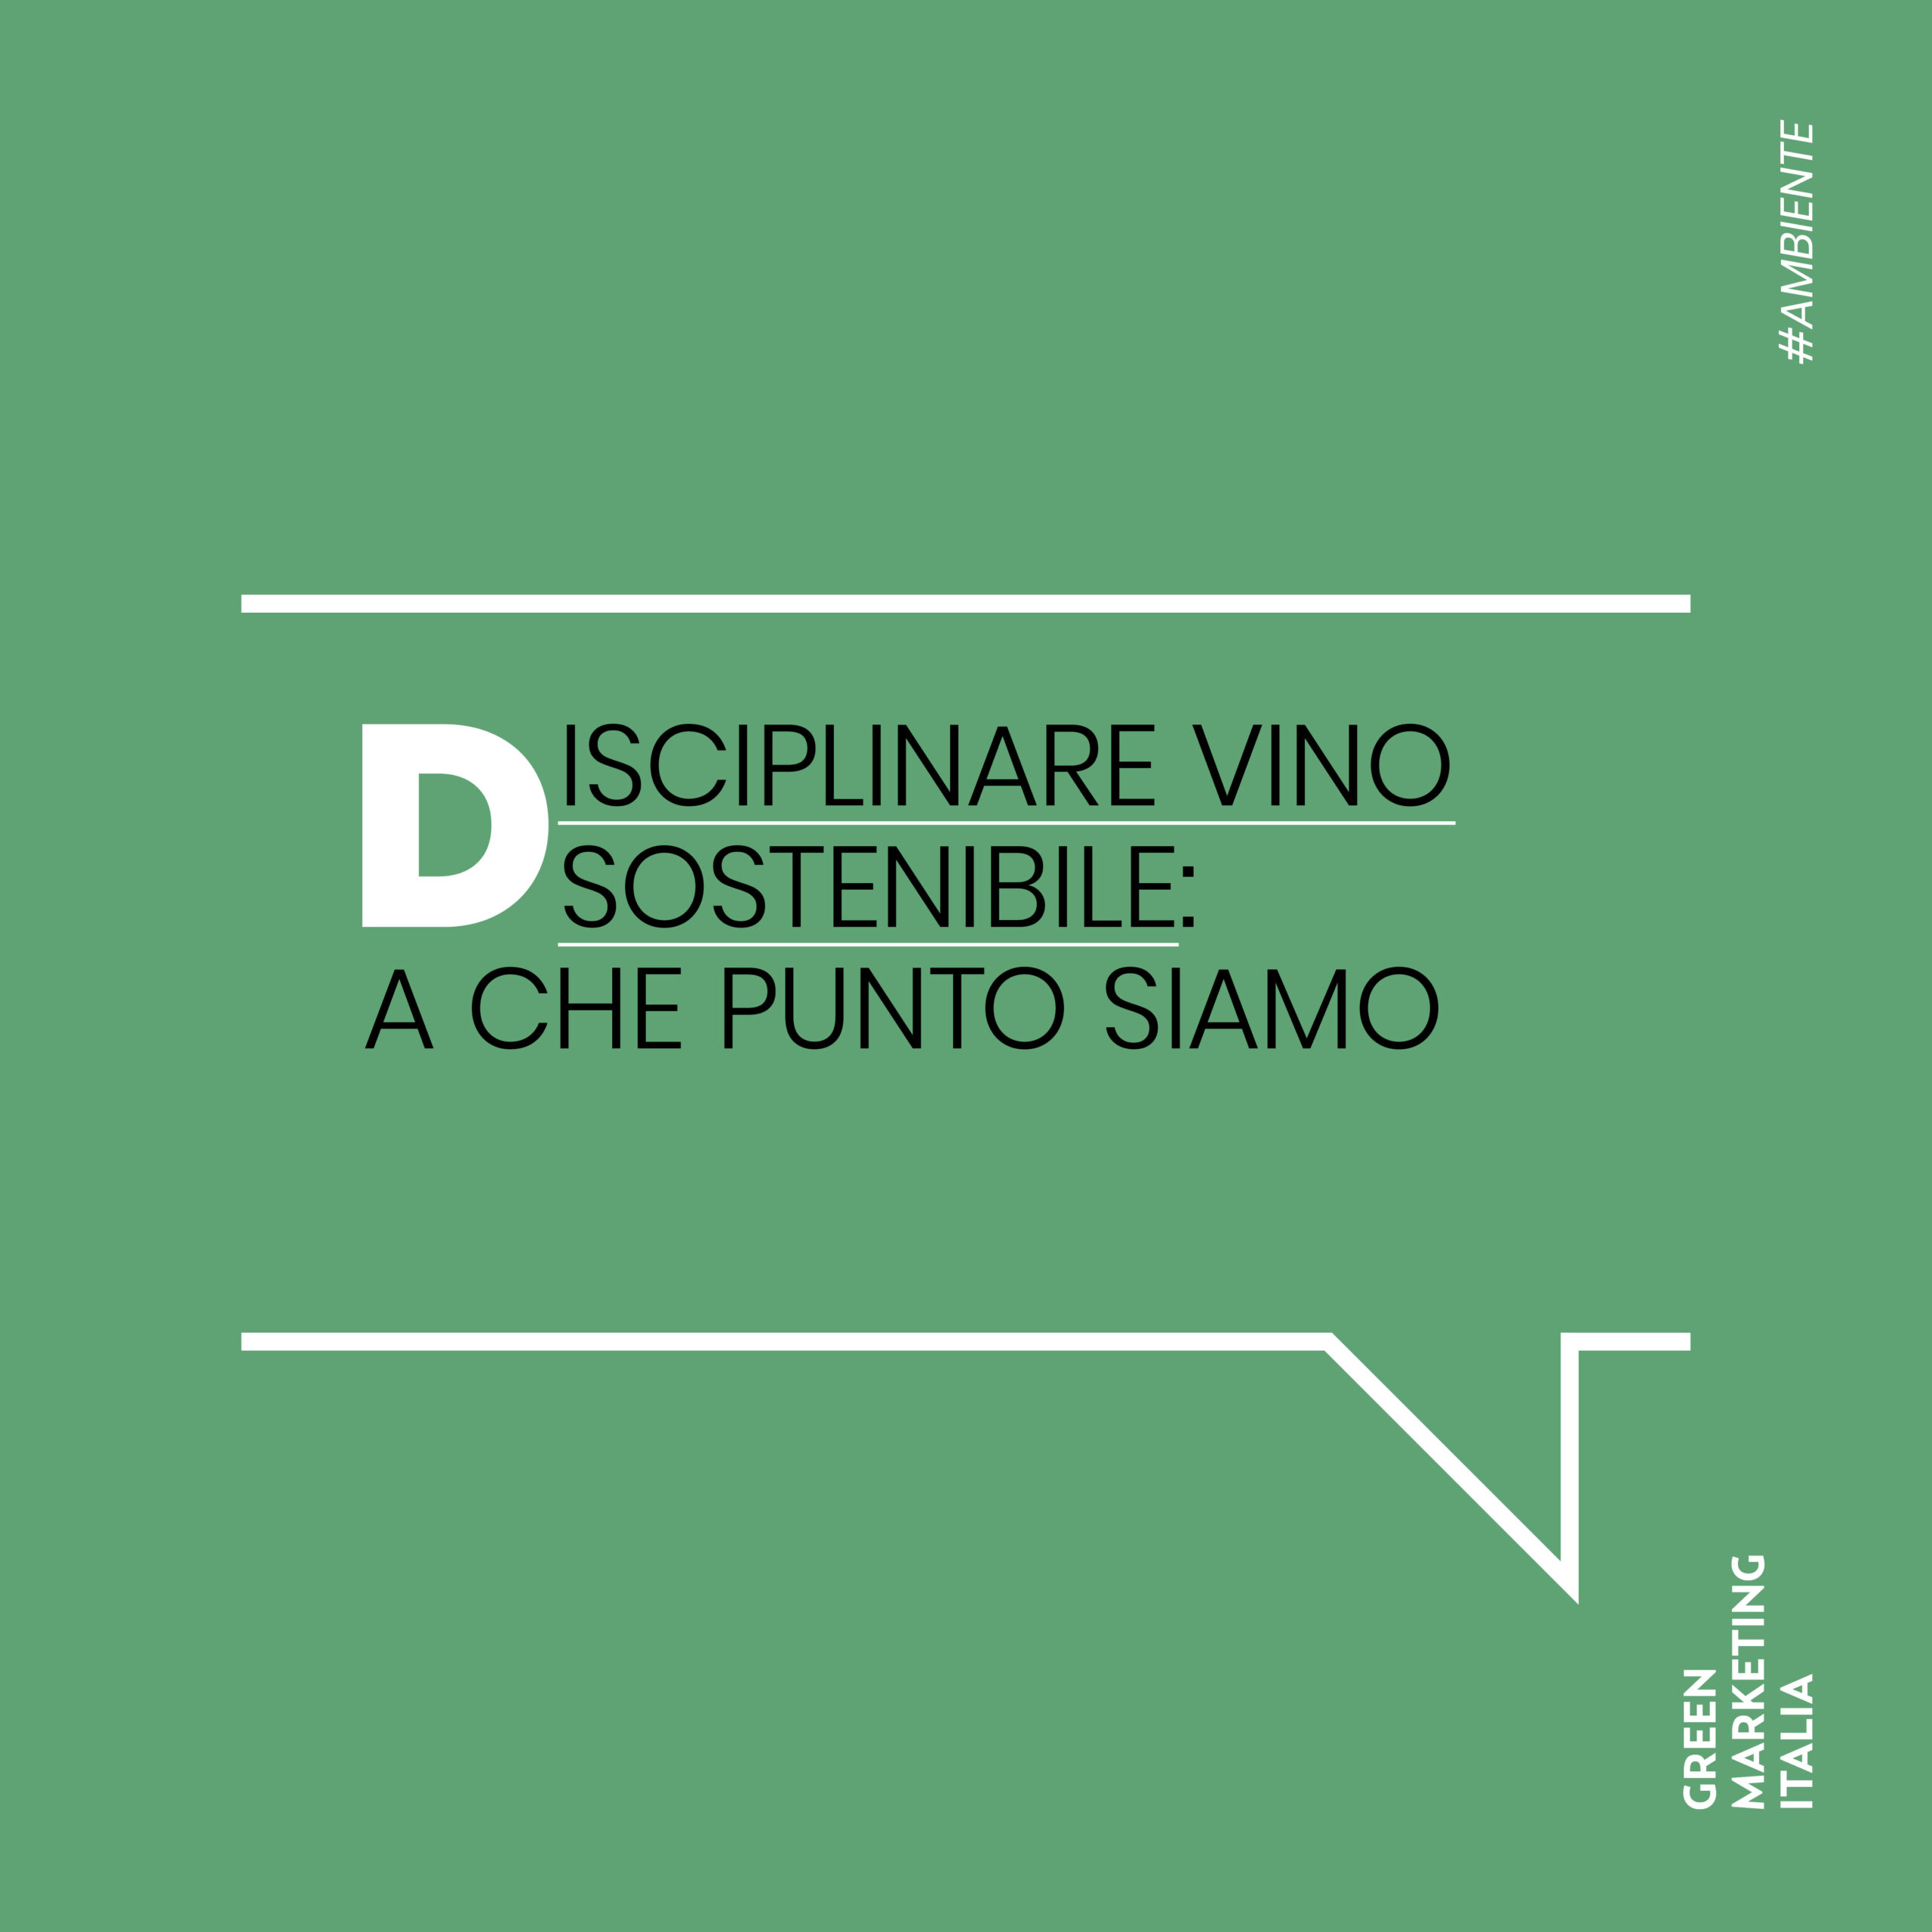 Disciplinare vino sostenibile